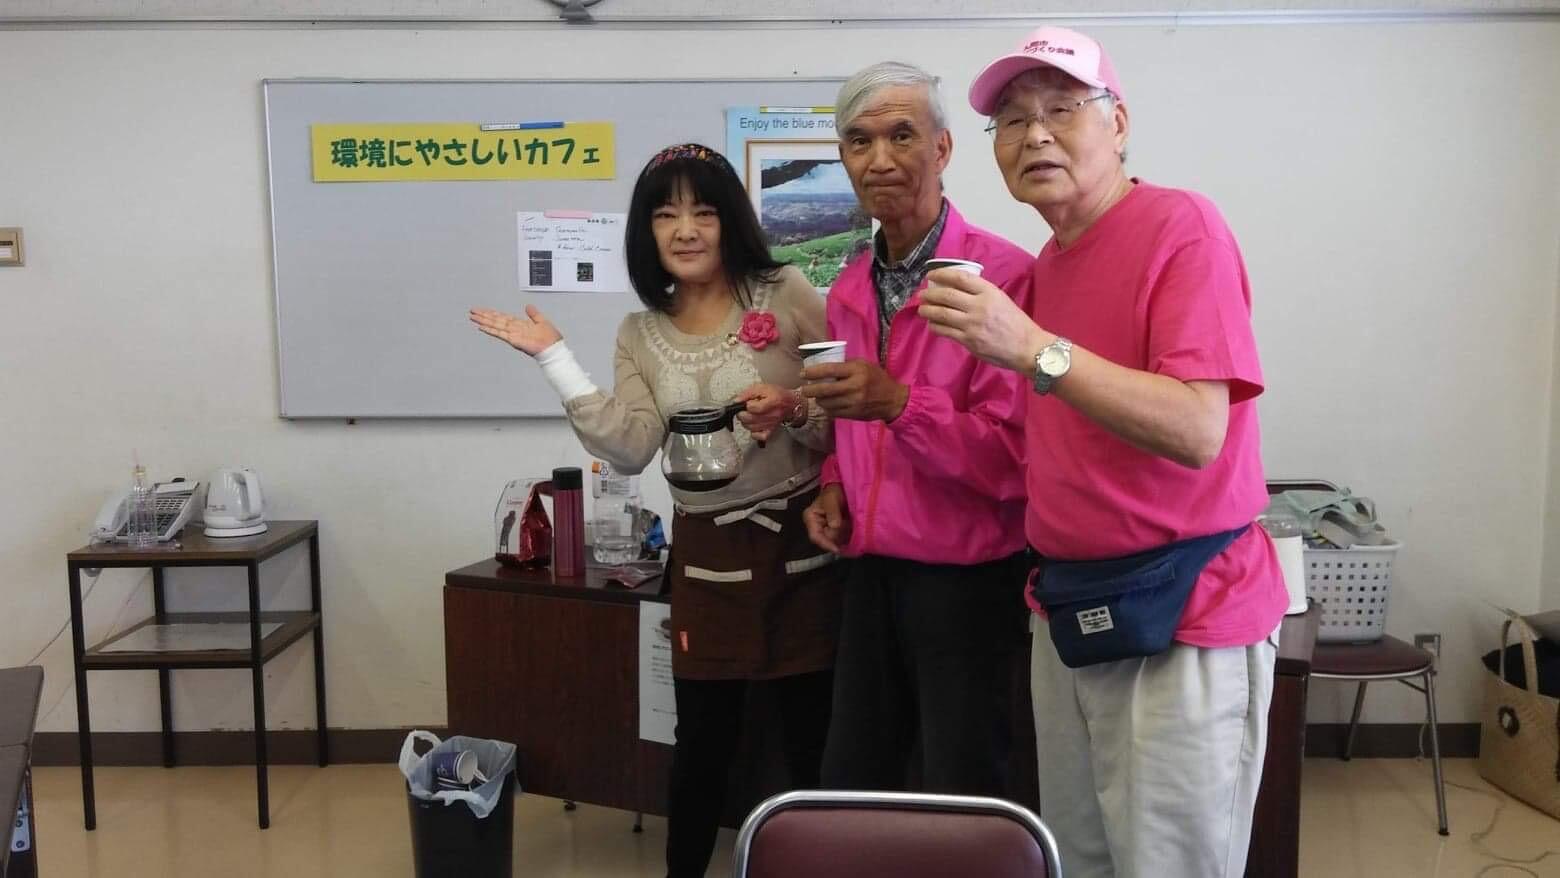 珈琲ポットを手に持った川名さんが参加者とポーズ